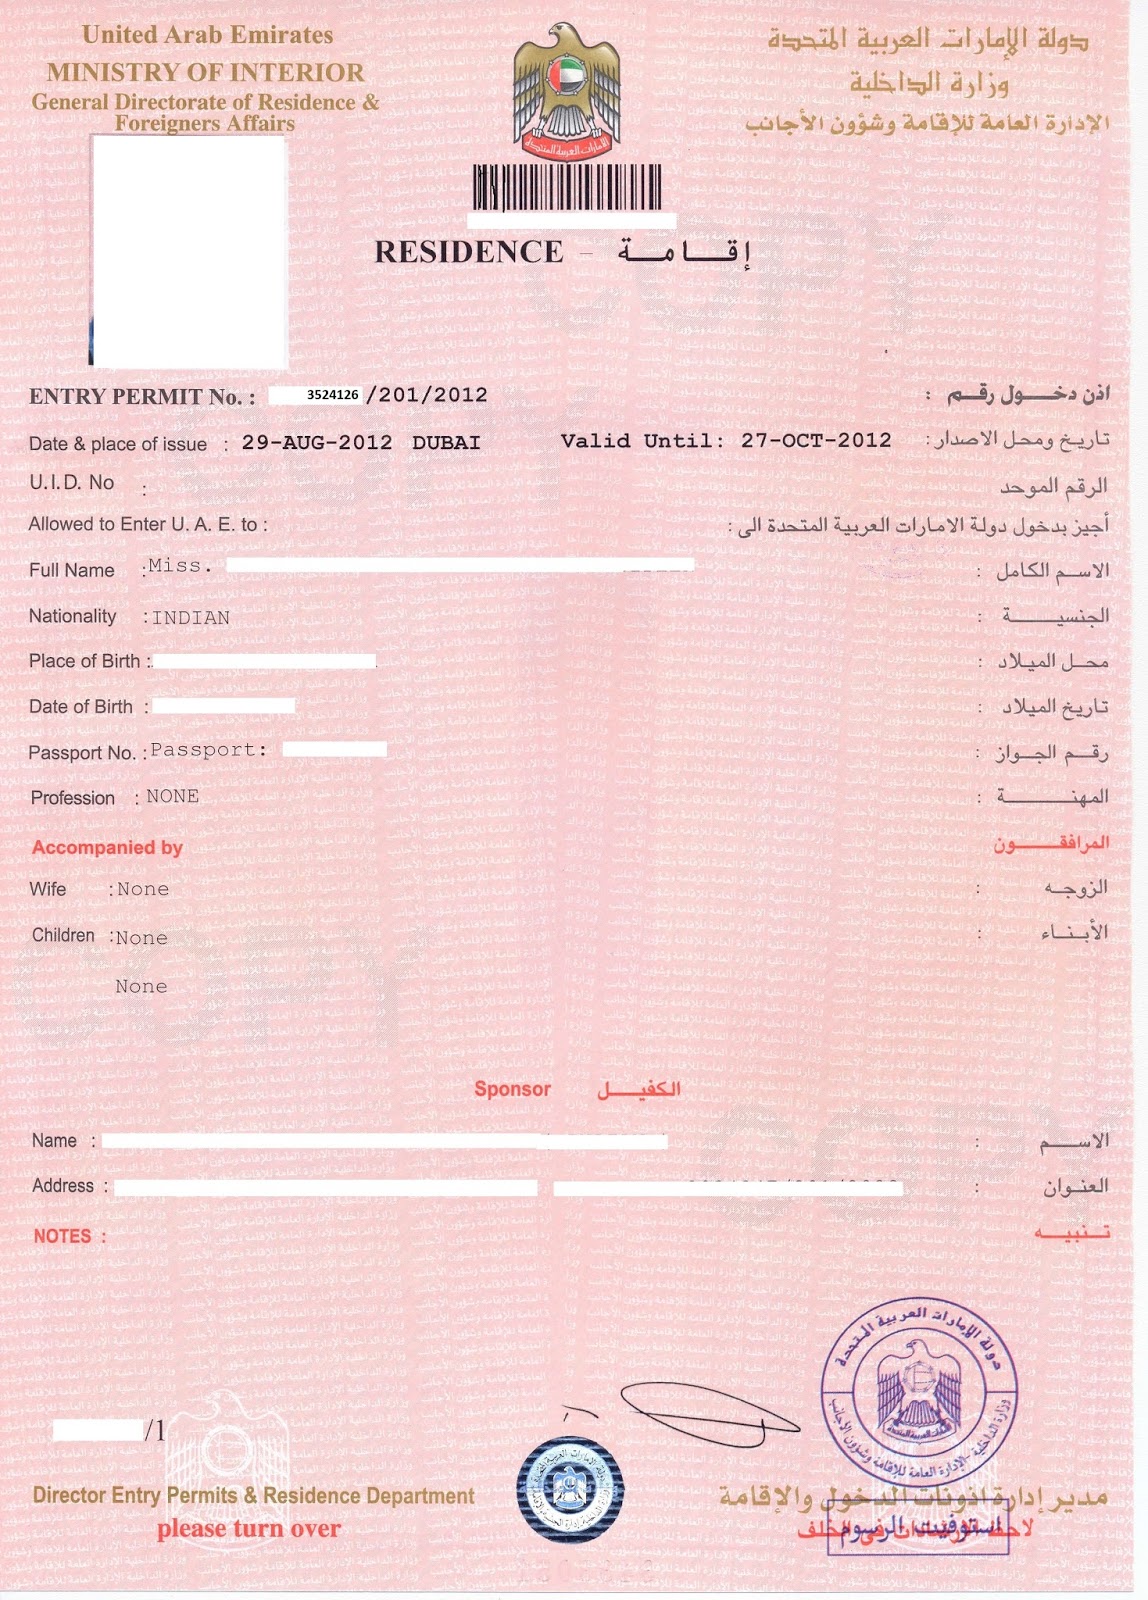 How to check visa number on UAE visa